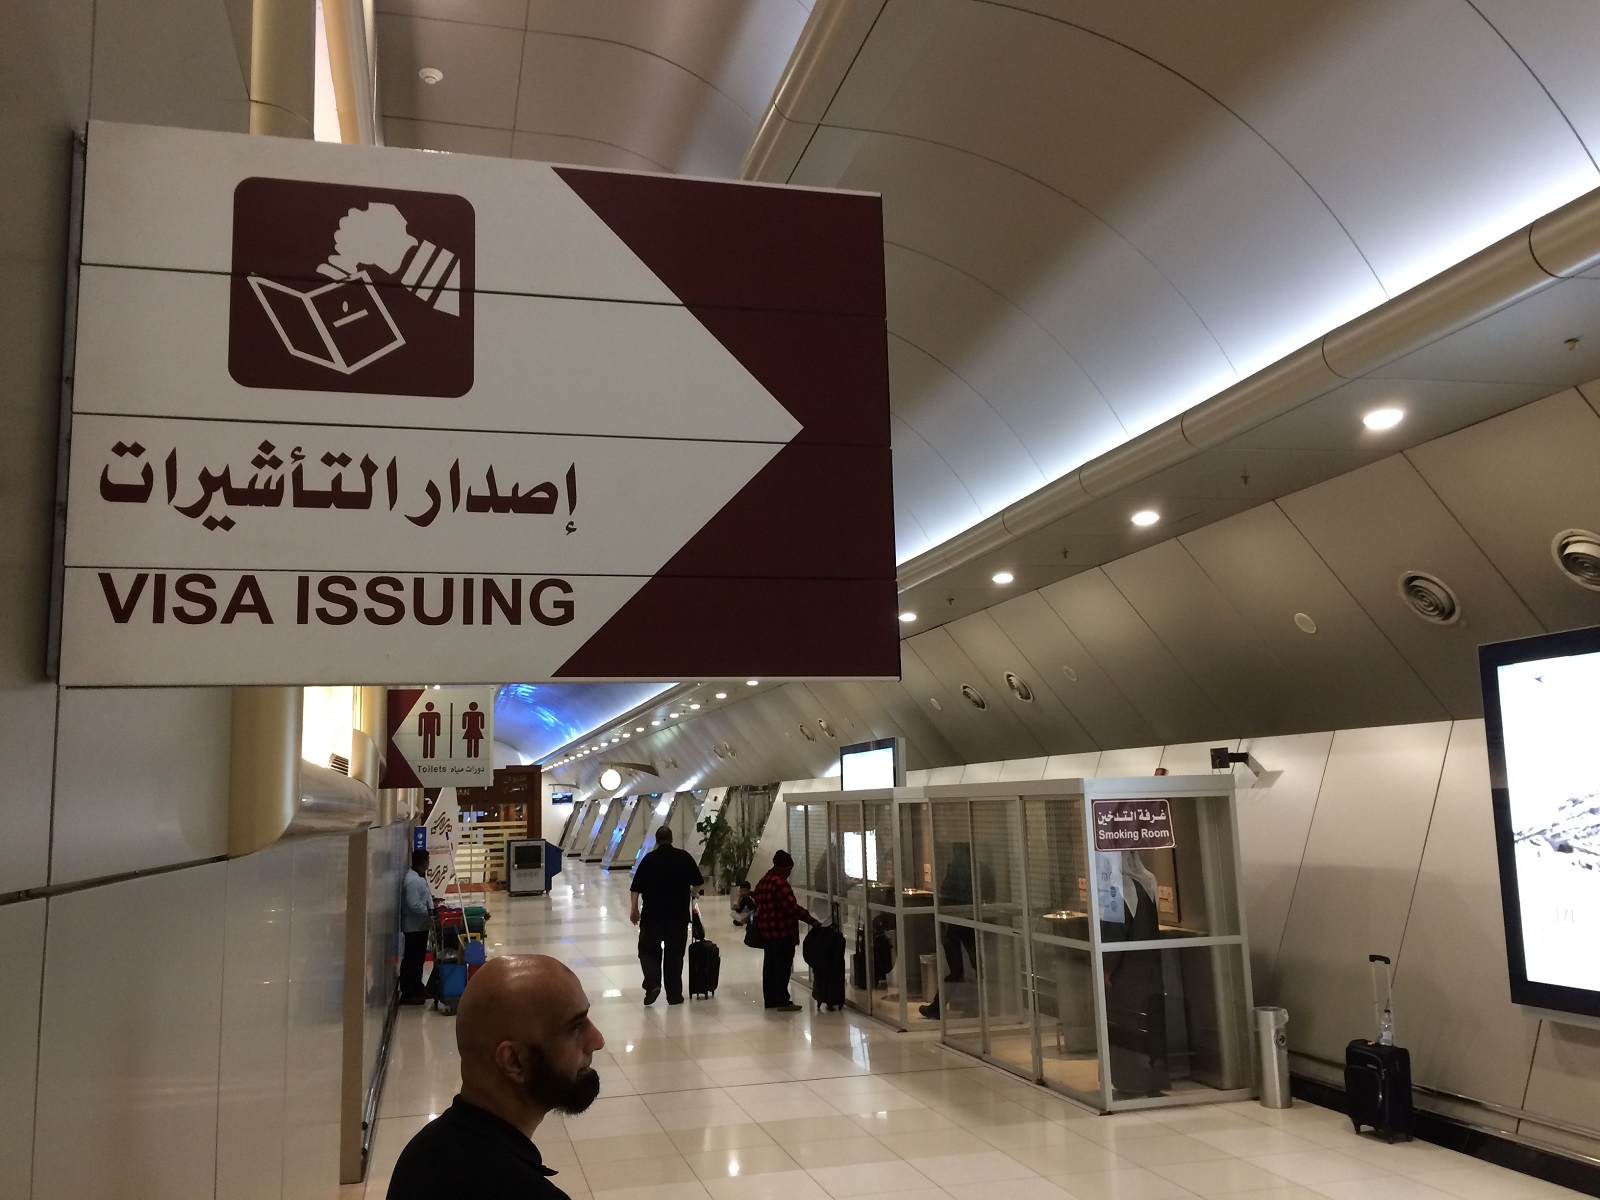 Kuvajt – cestovateľské rady, tipy a itinerár